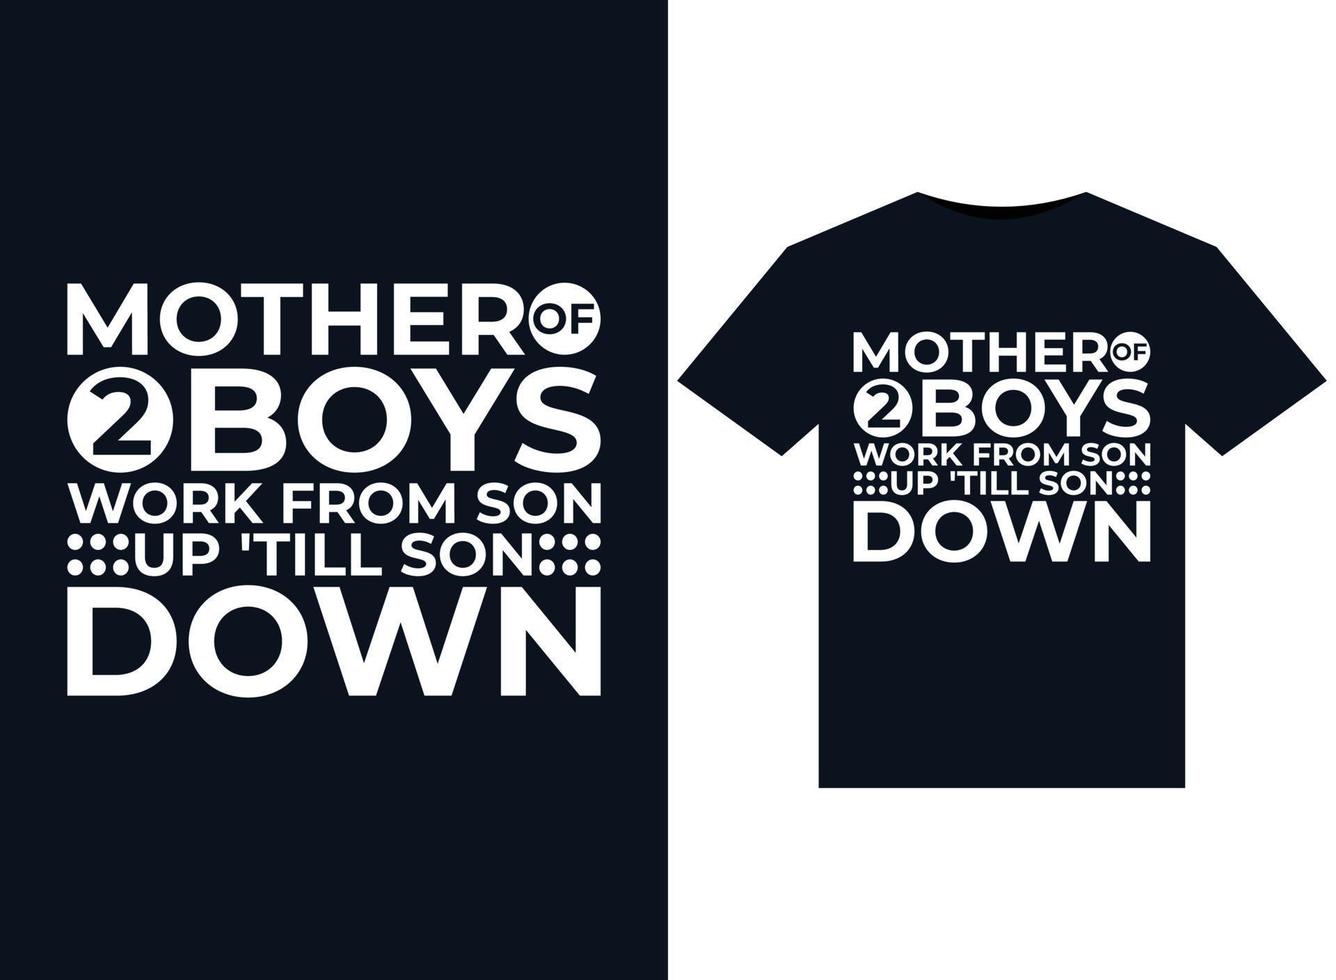 mère de 2 garçons travaille de son fils jusqu'à son fils mère de 2 garçons travaille de son fils jusqu'à son fils illustrations pour la conception de t-shirts prêts à imprimer vecteur